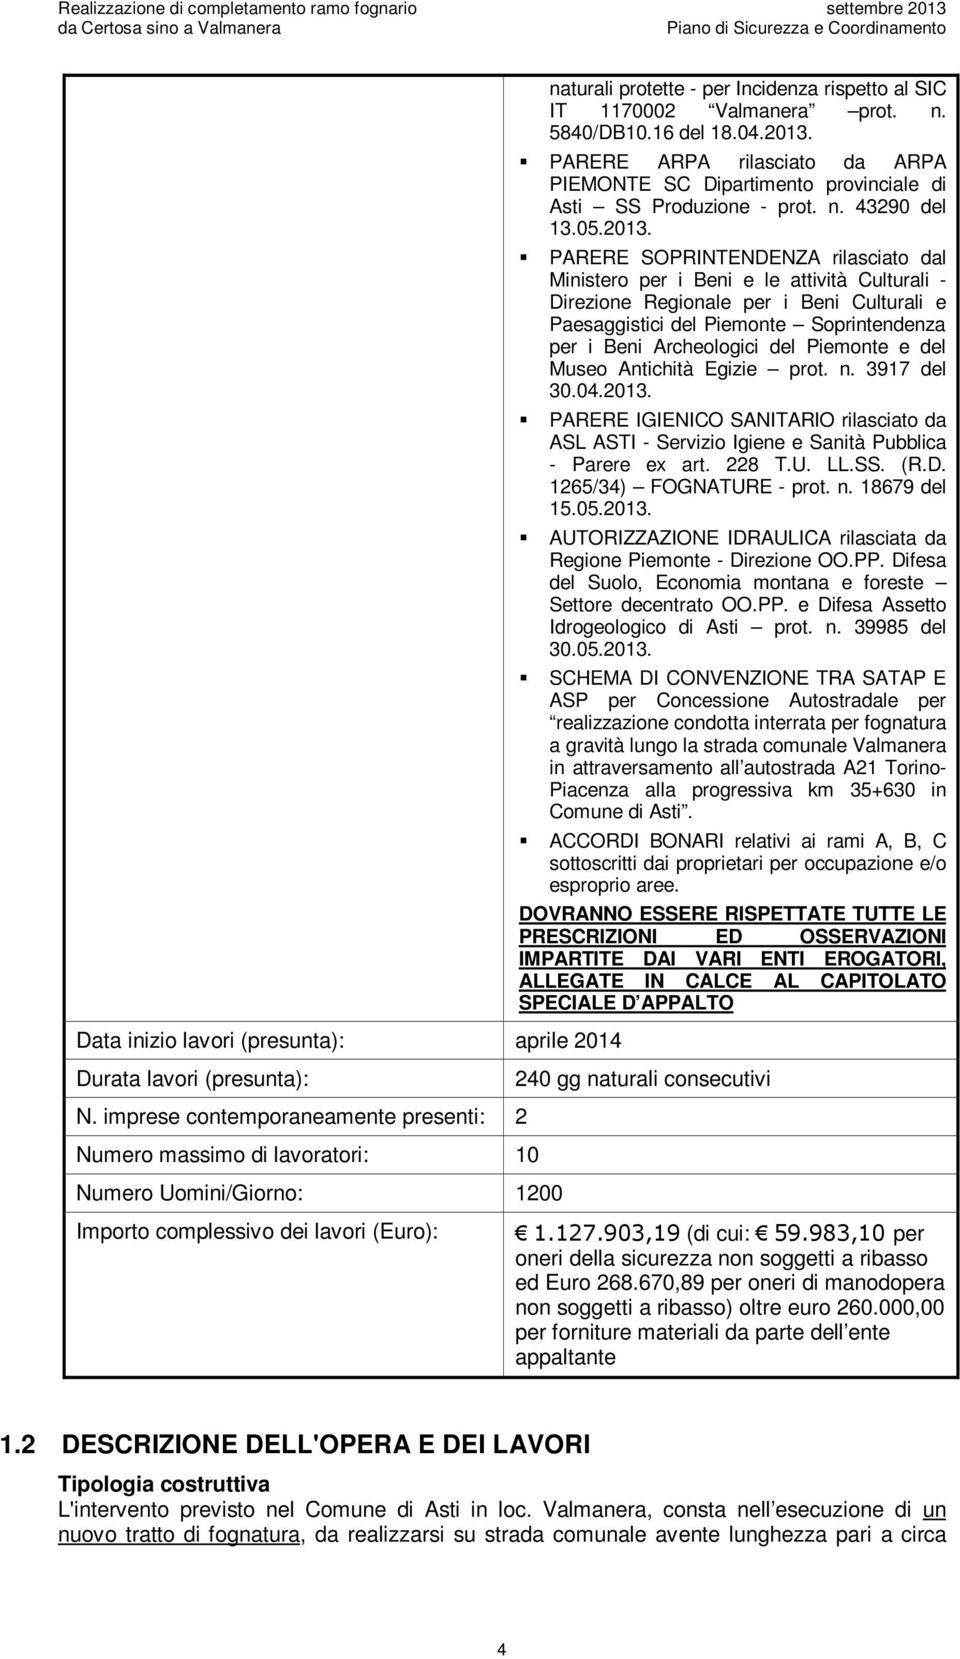 PARERE ARPA rilasciat da ARPA PIEMONTE SC Dipartiment prvinciale di Asti SS Prduzine - prt. n. 43290 del 13.05.2013.